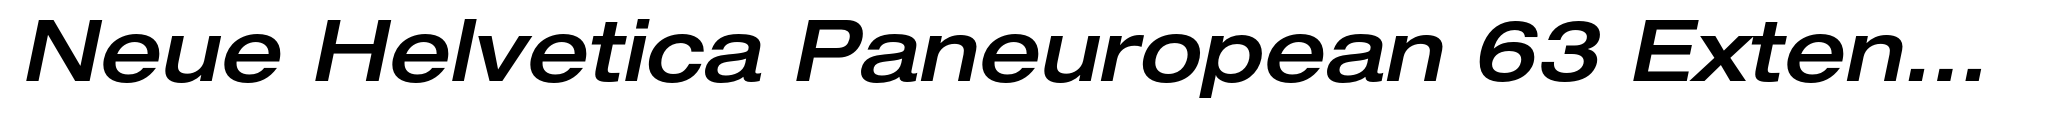 Neue Helvetica Paneuropean 63 Extended Medium Oblique image